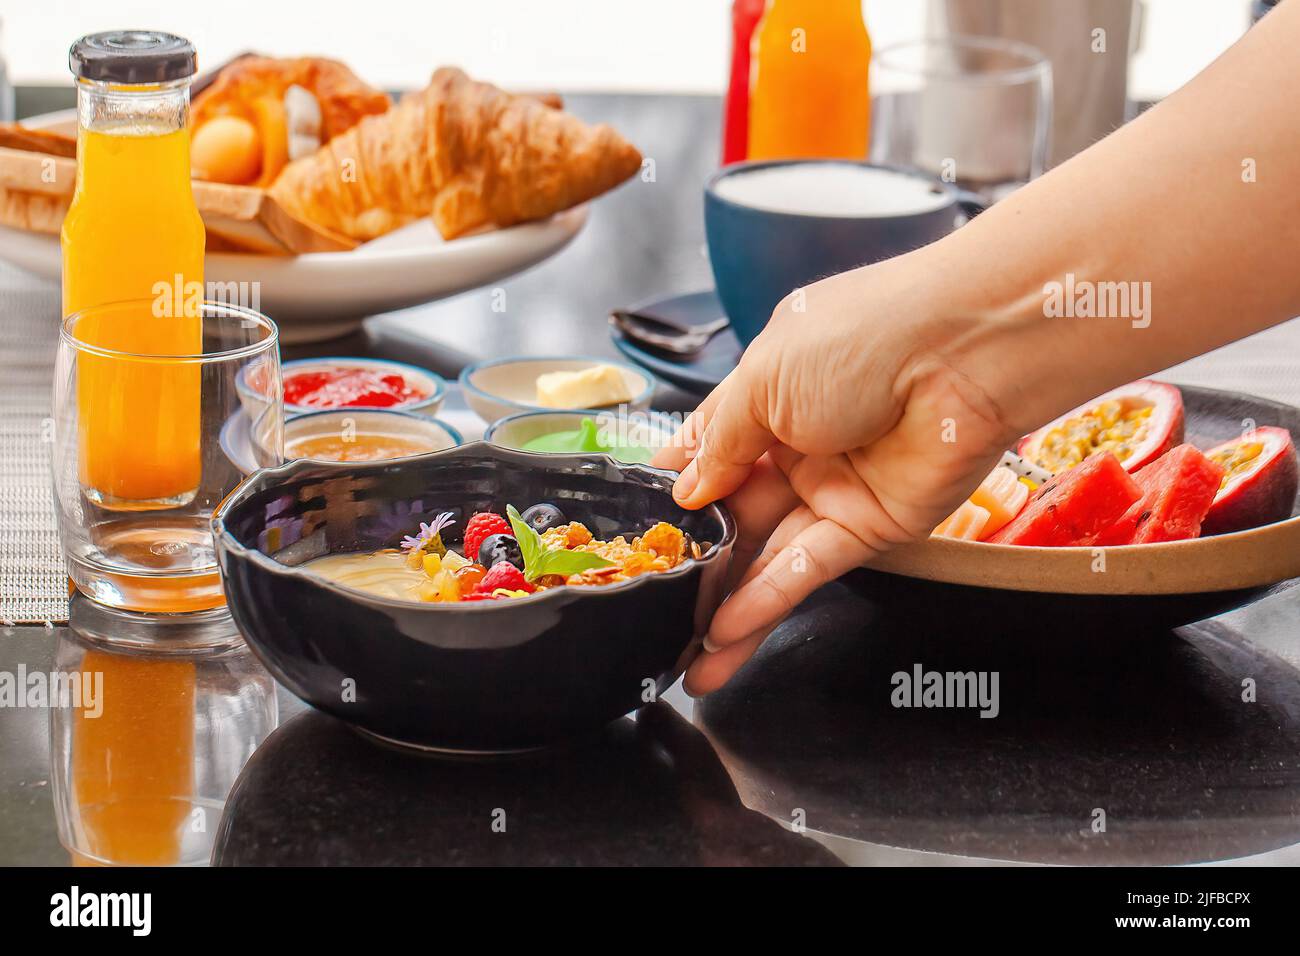 Nourriture végétalienne saine dans le café. Femme main place une assiette avec bol à smoothie sur la table. Nourriture biologique le matin, fruits frais, jus, latte sans lactose Banque D'Images